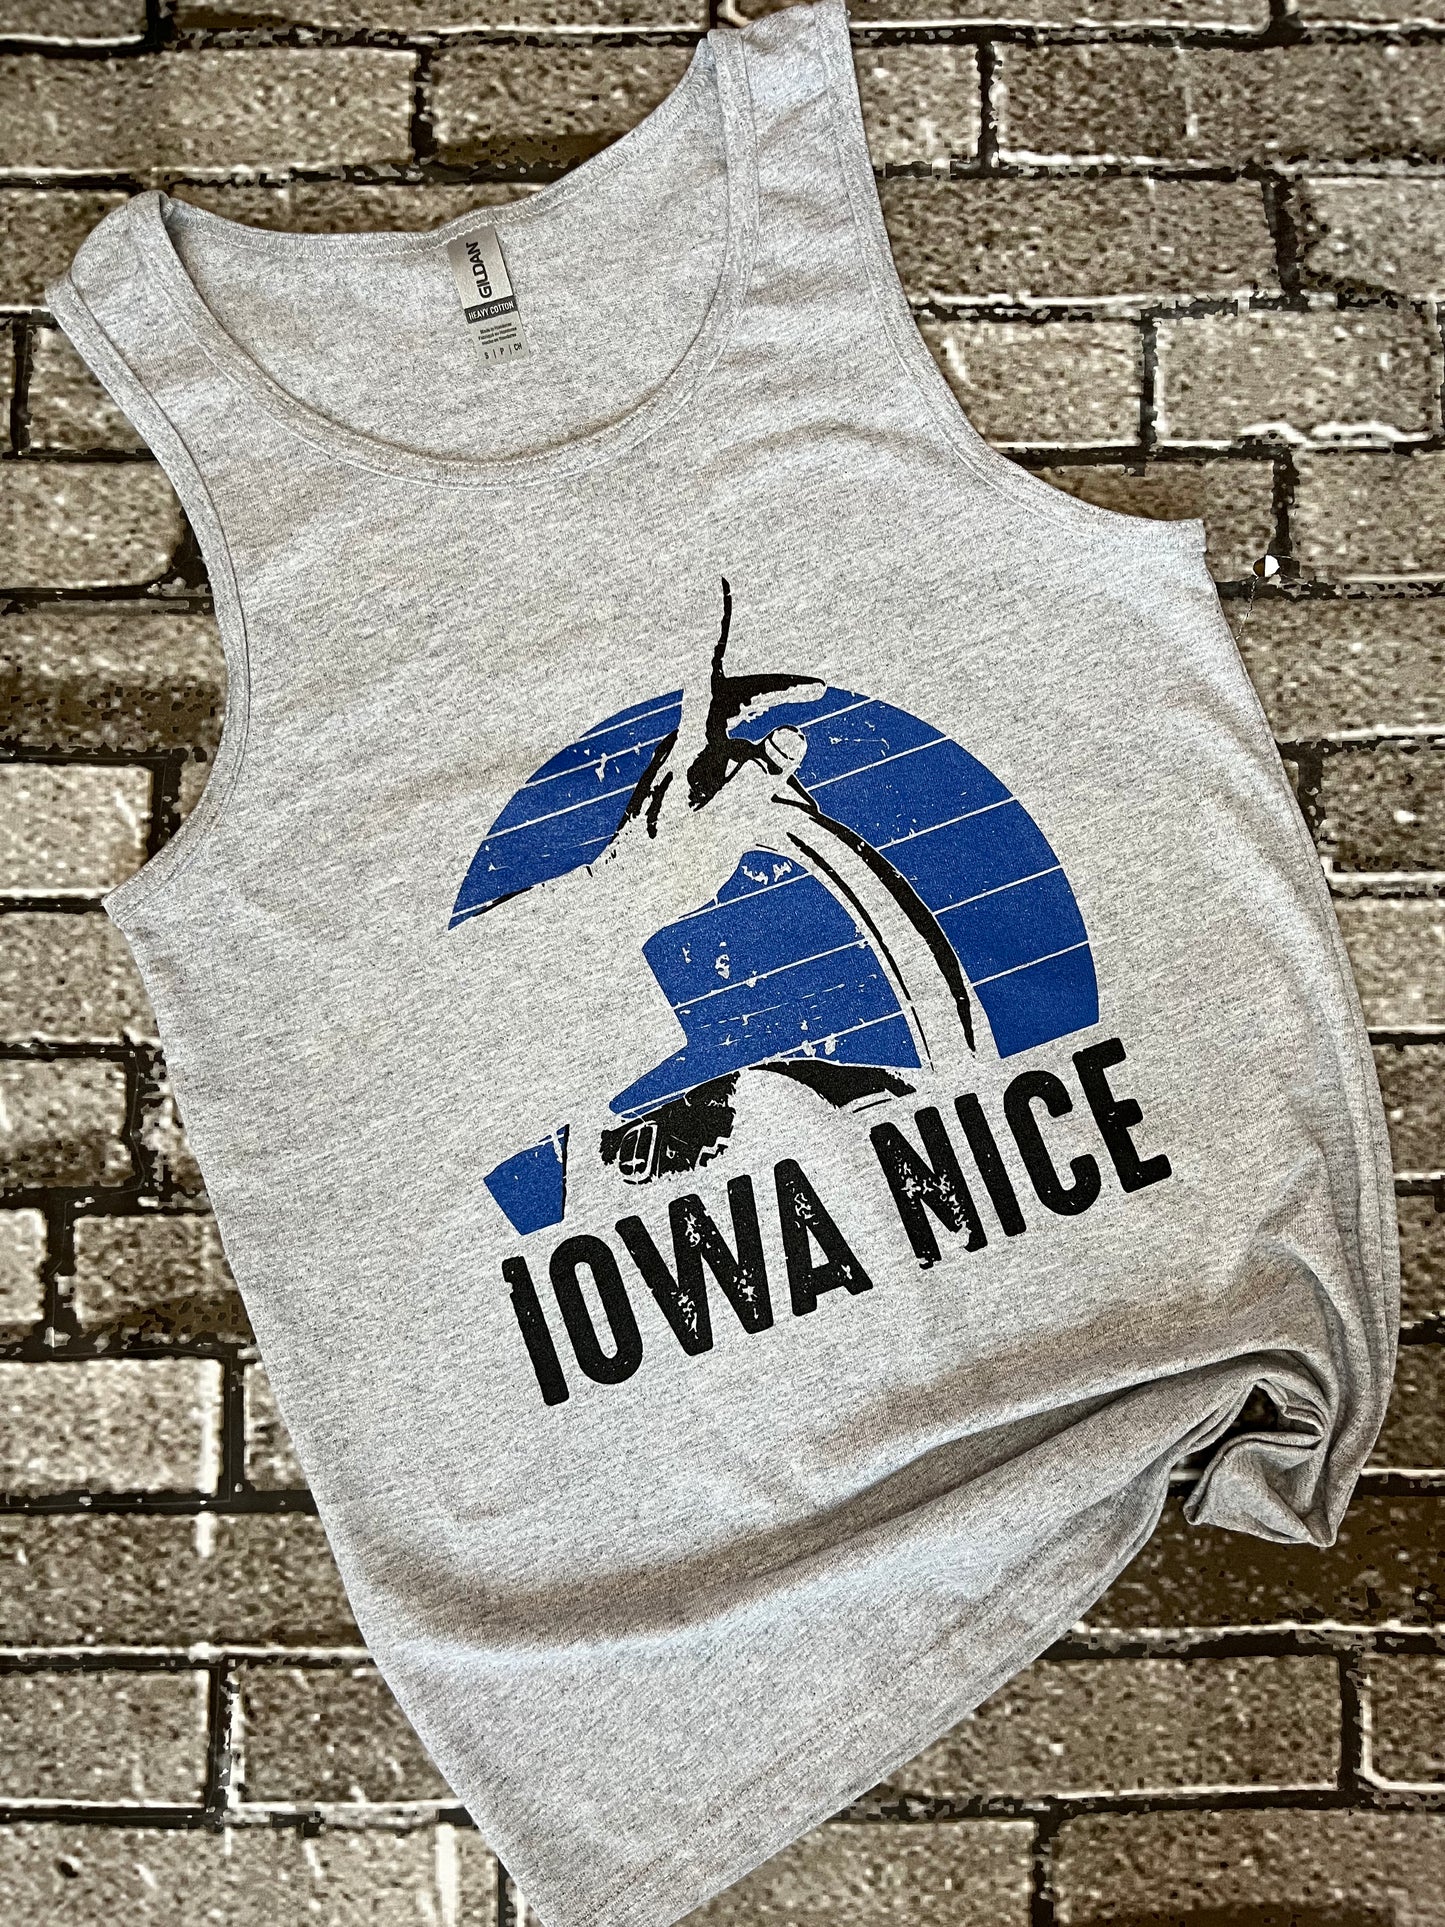 Iowa Nice Shirt